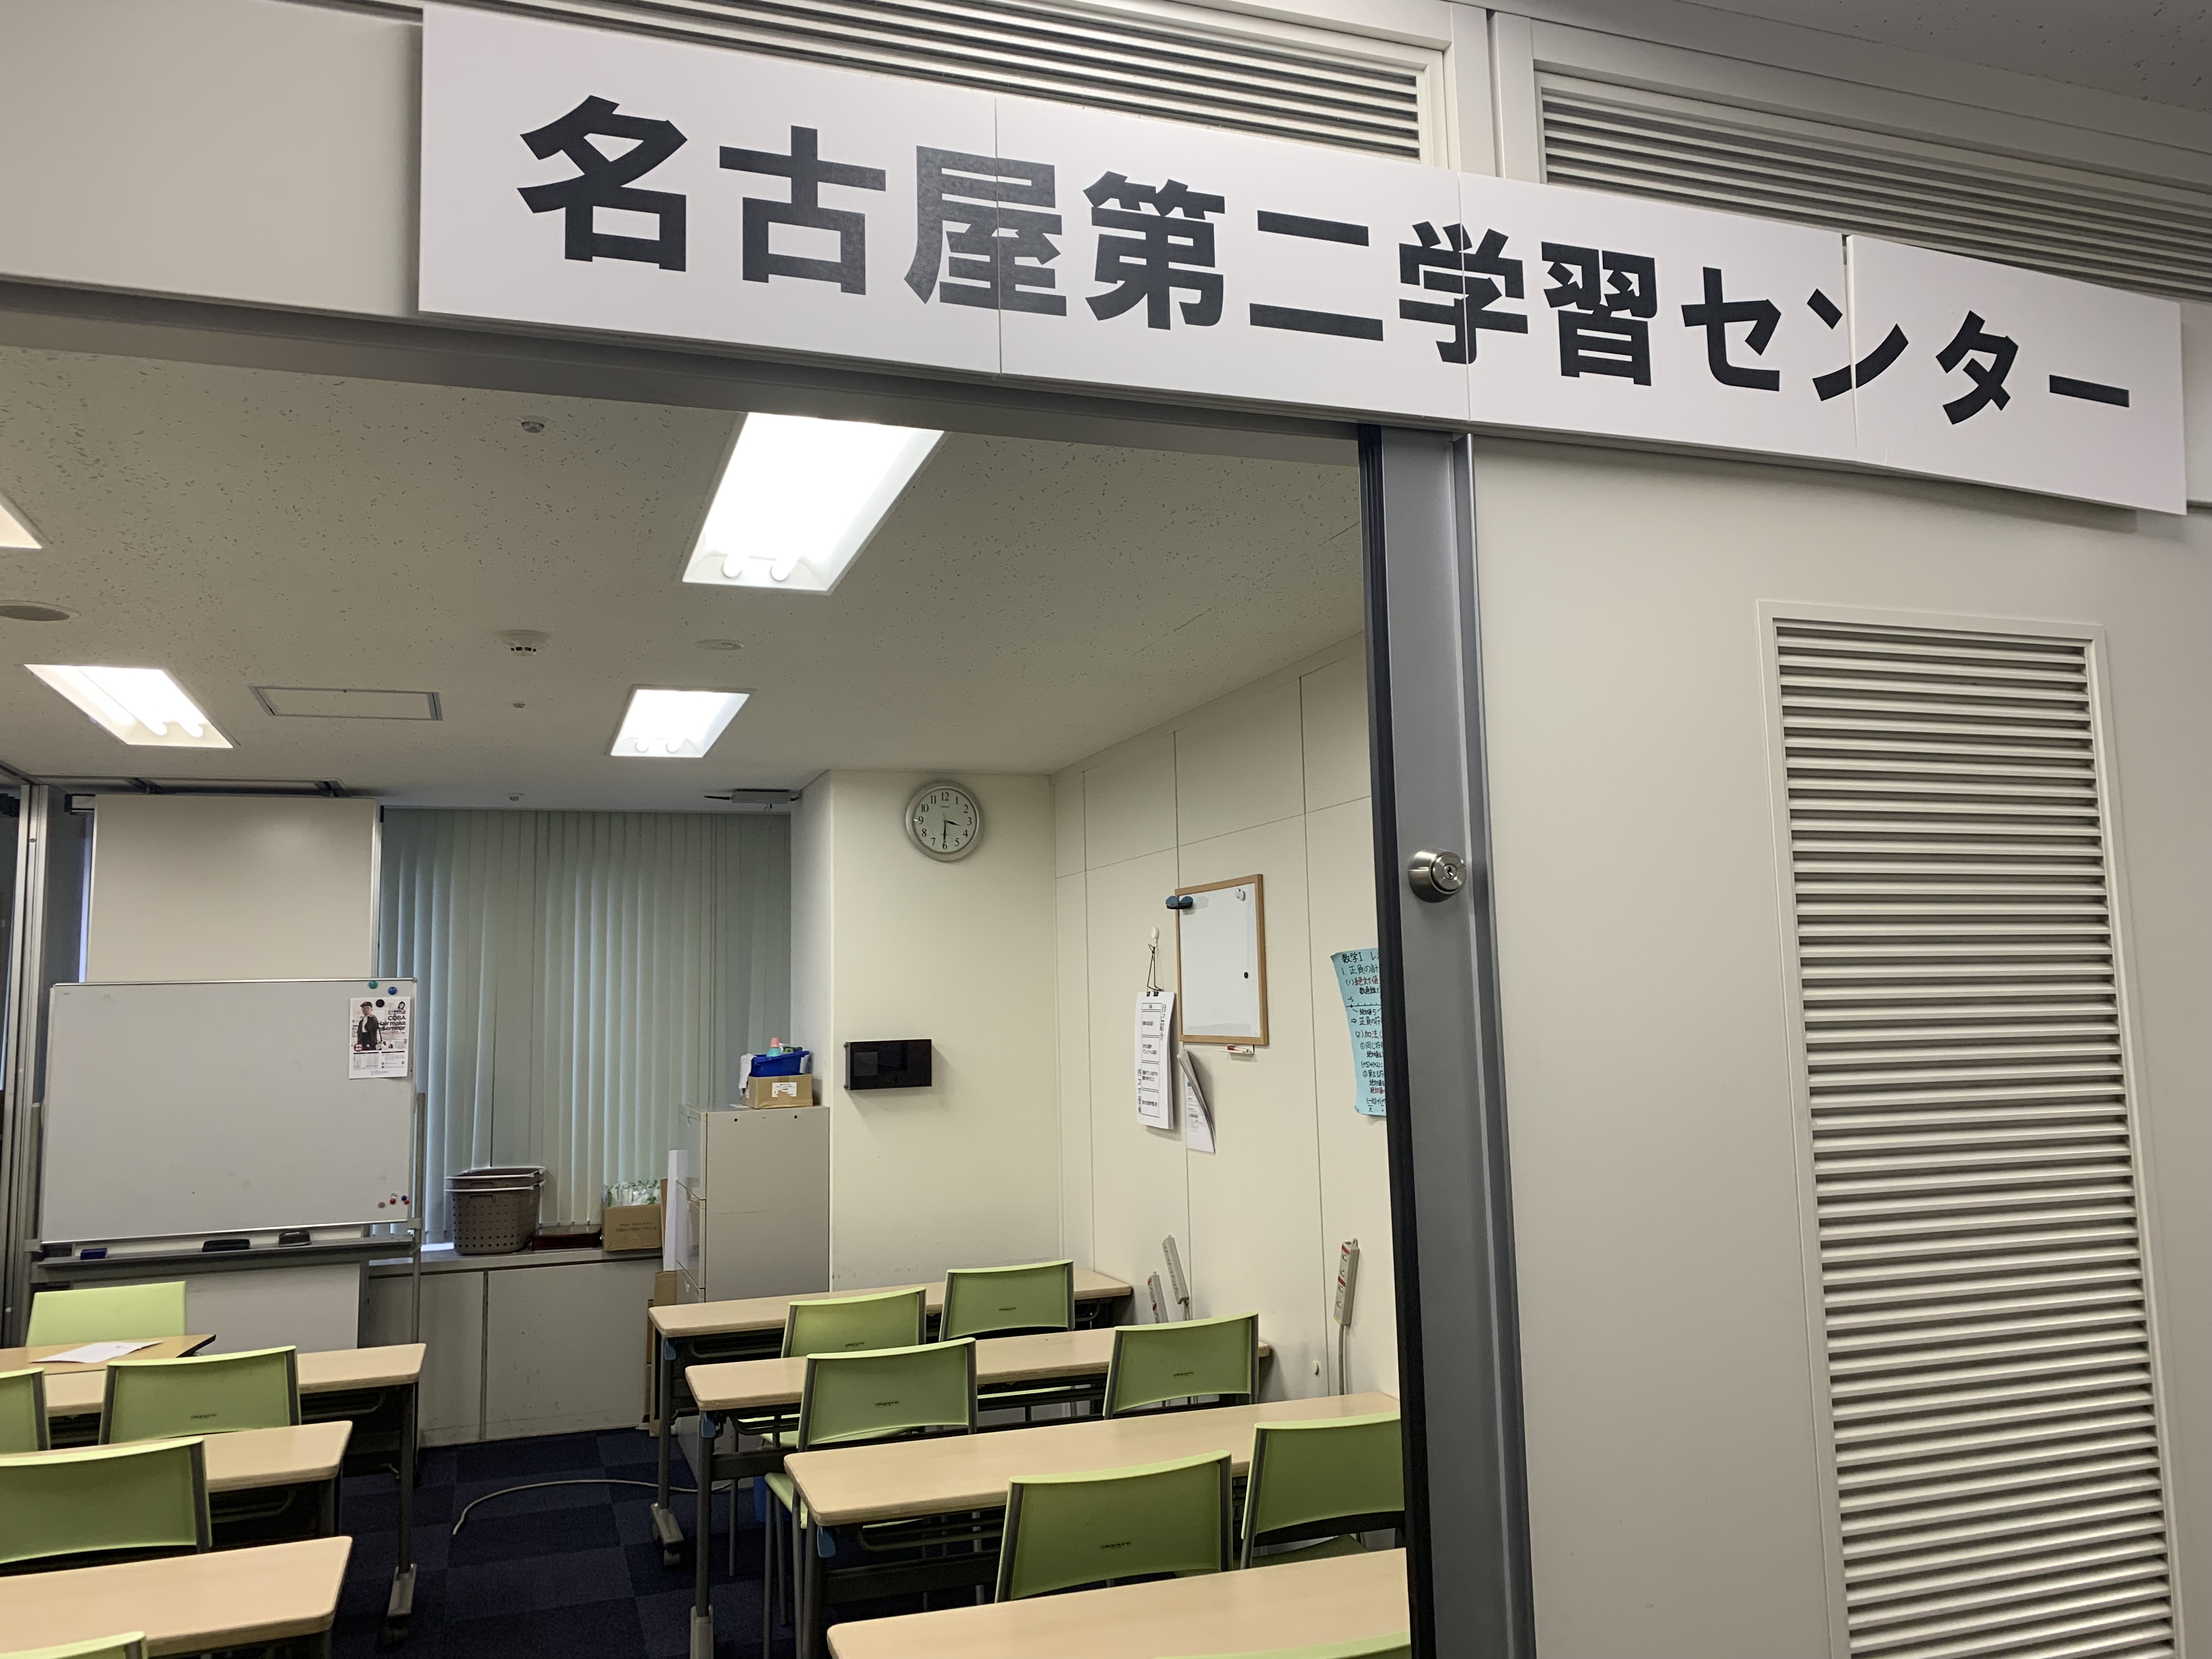 https://www.hchs.ed.jp/campus/nagoya/images/%E5%86%99%E7%9C%9F%202019-12-02%2015%2029%2027.jpg